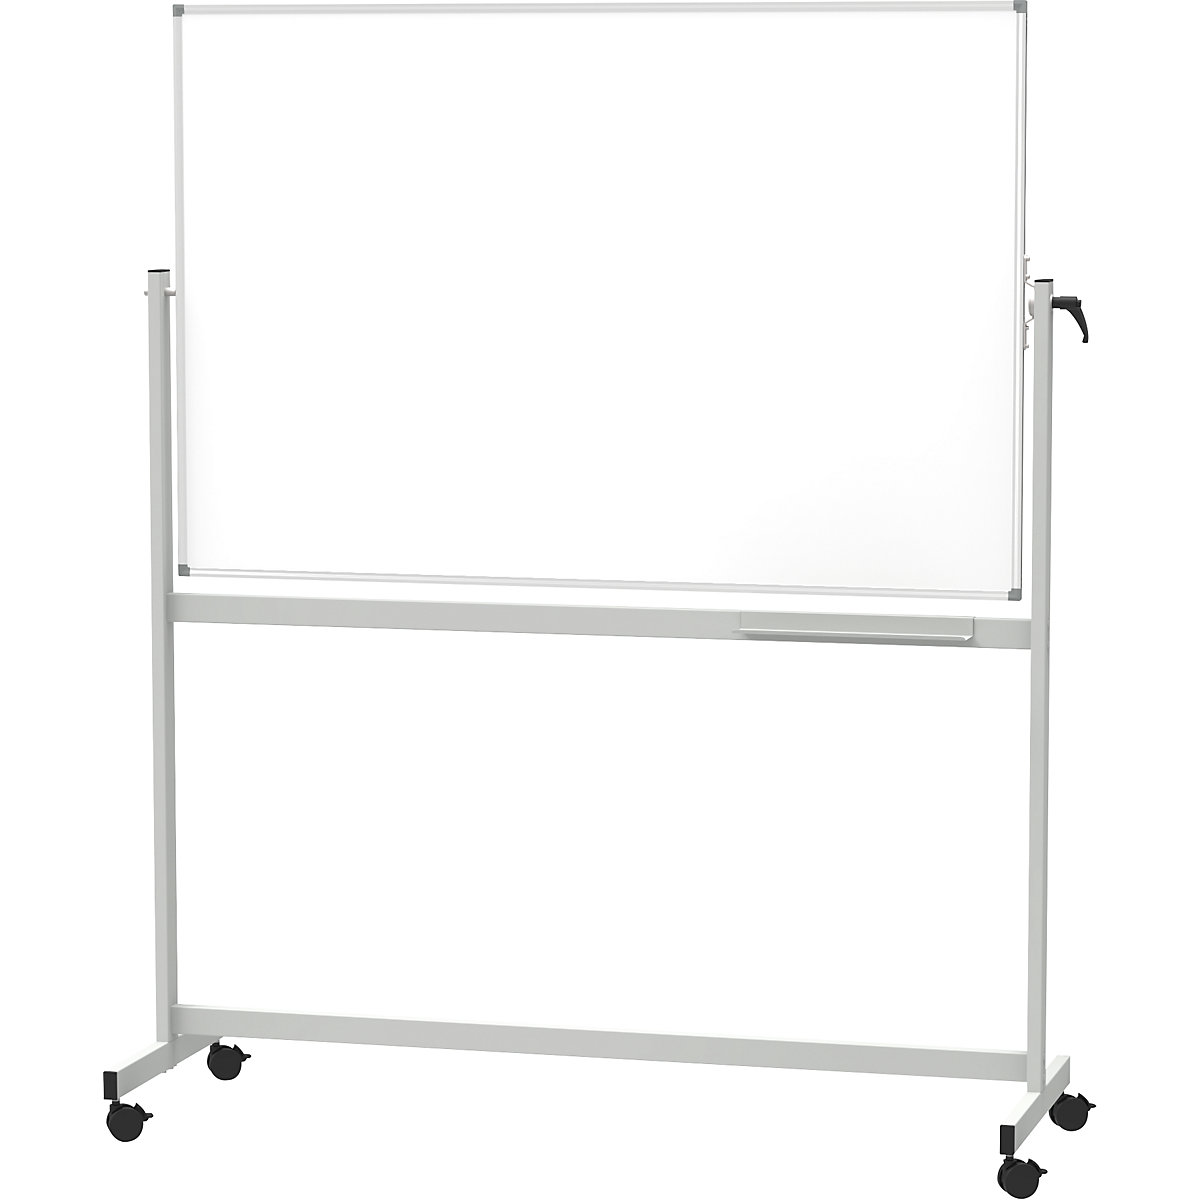 Mobile whiteboard – MAUL